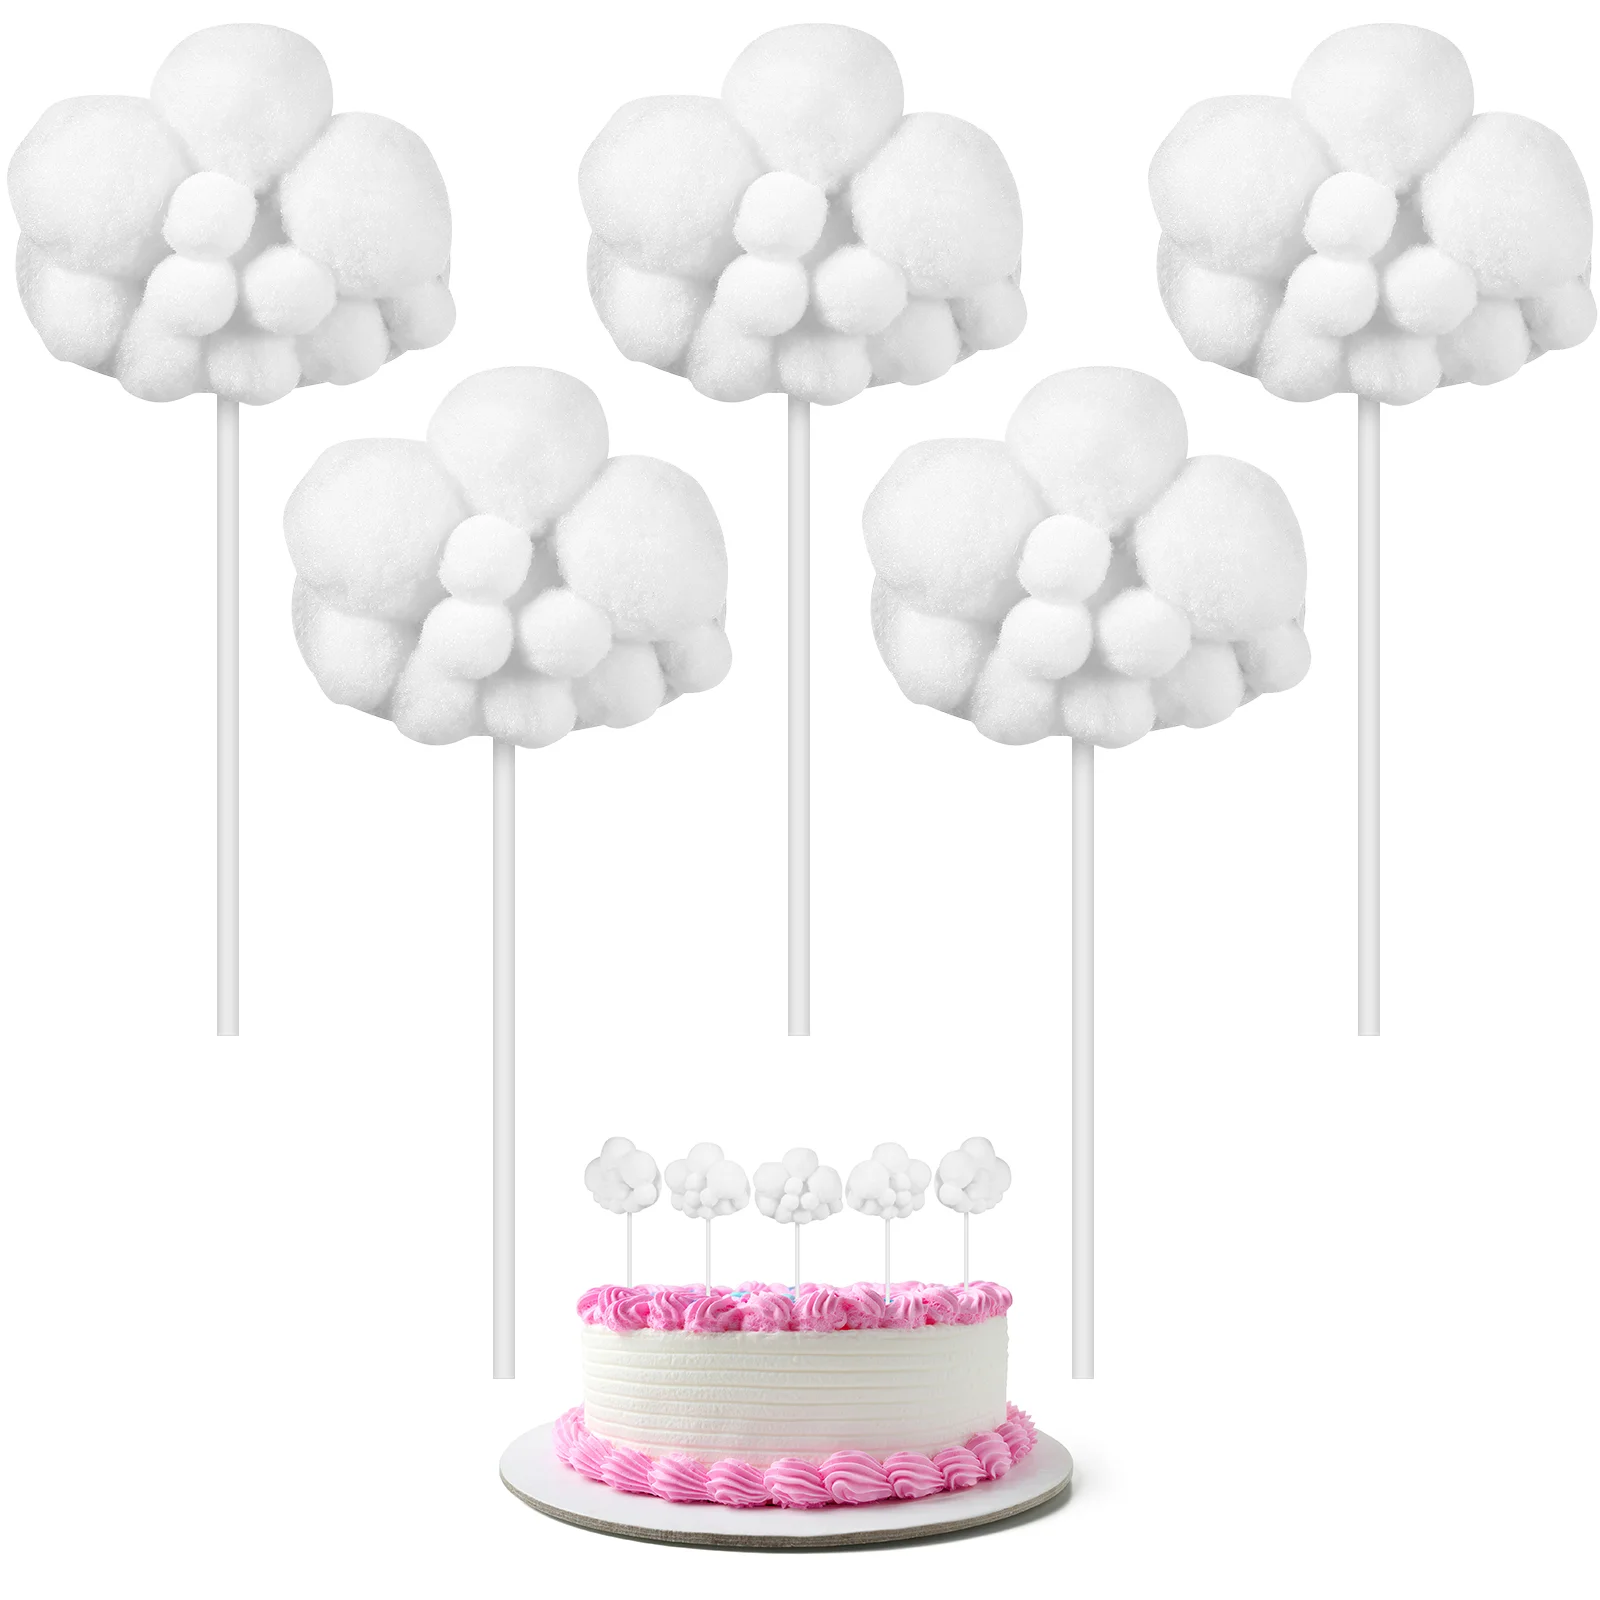 

5 шт. Топпер для кексов в форме облака, Свадебный Топпер для кексов, воздушный шар, Топпер для кексов, закуска для тортов, медиаторы для украше...